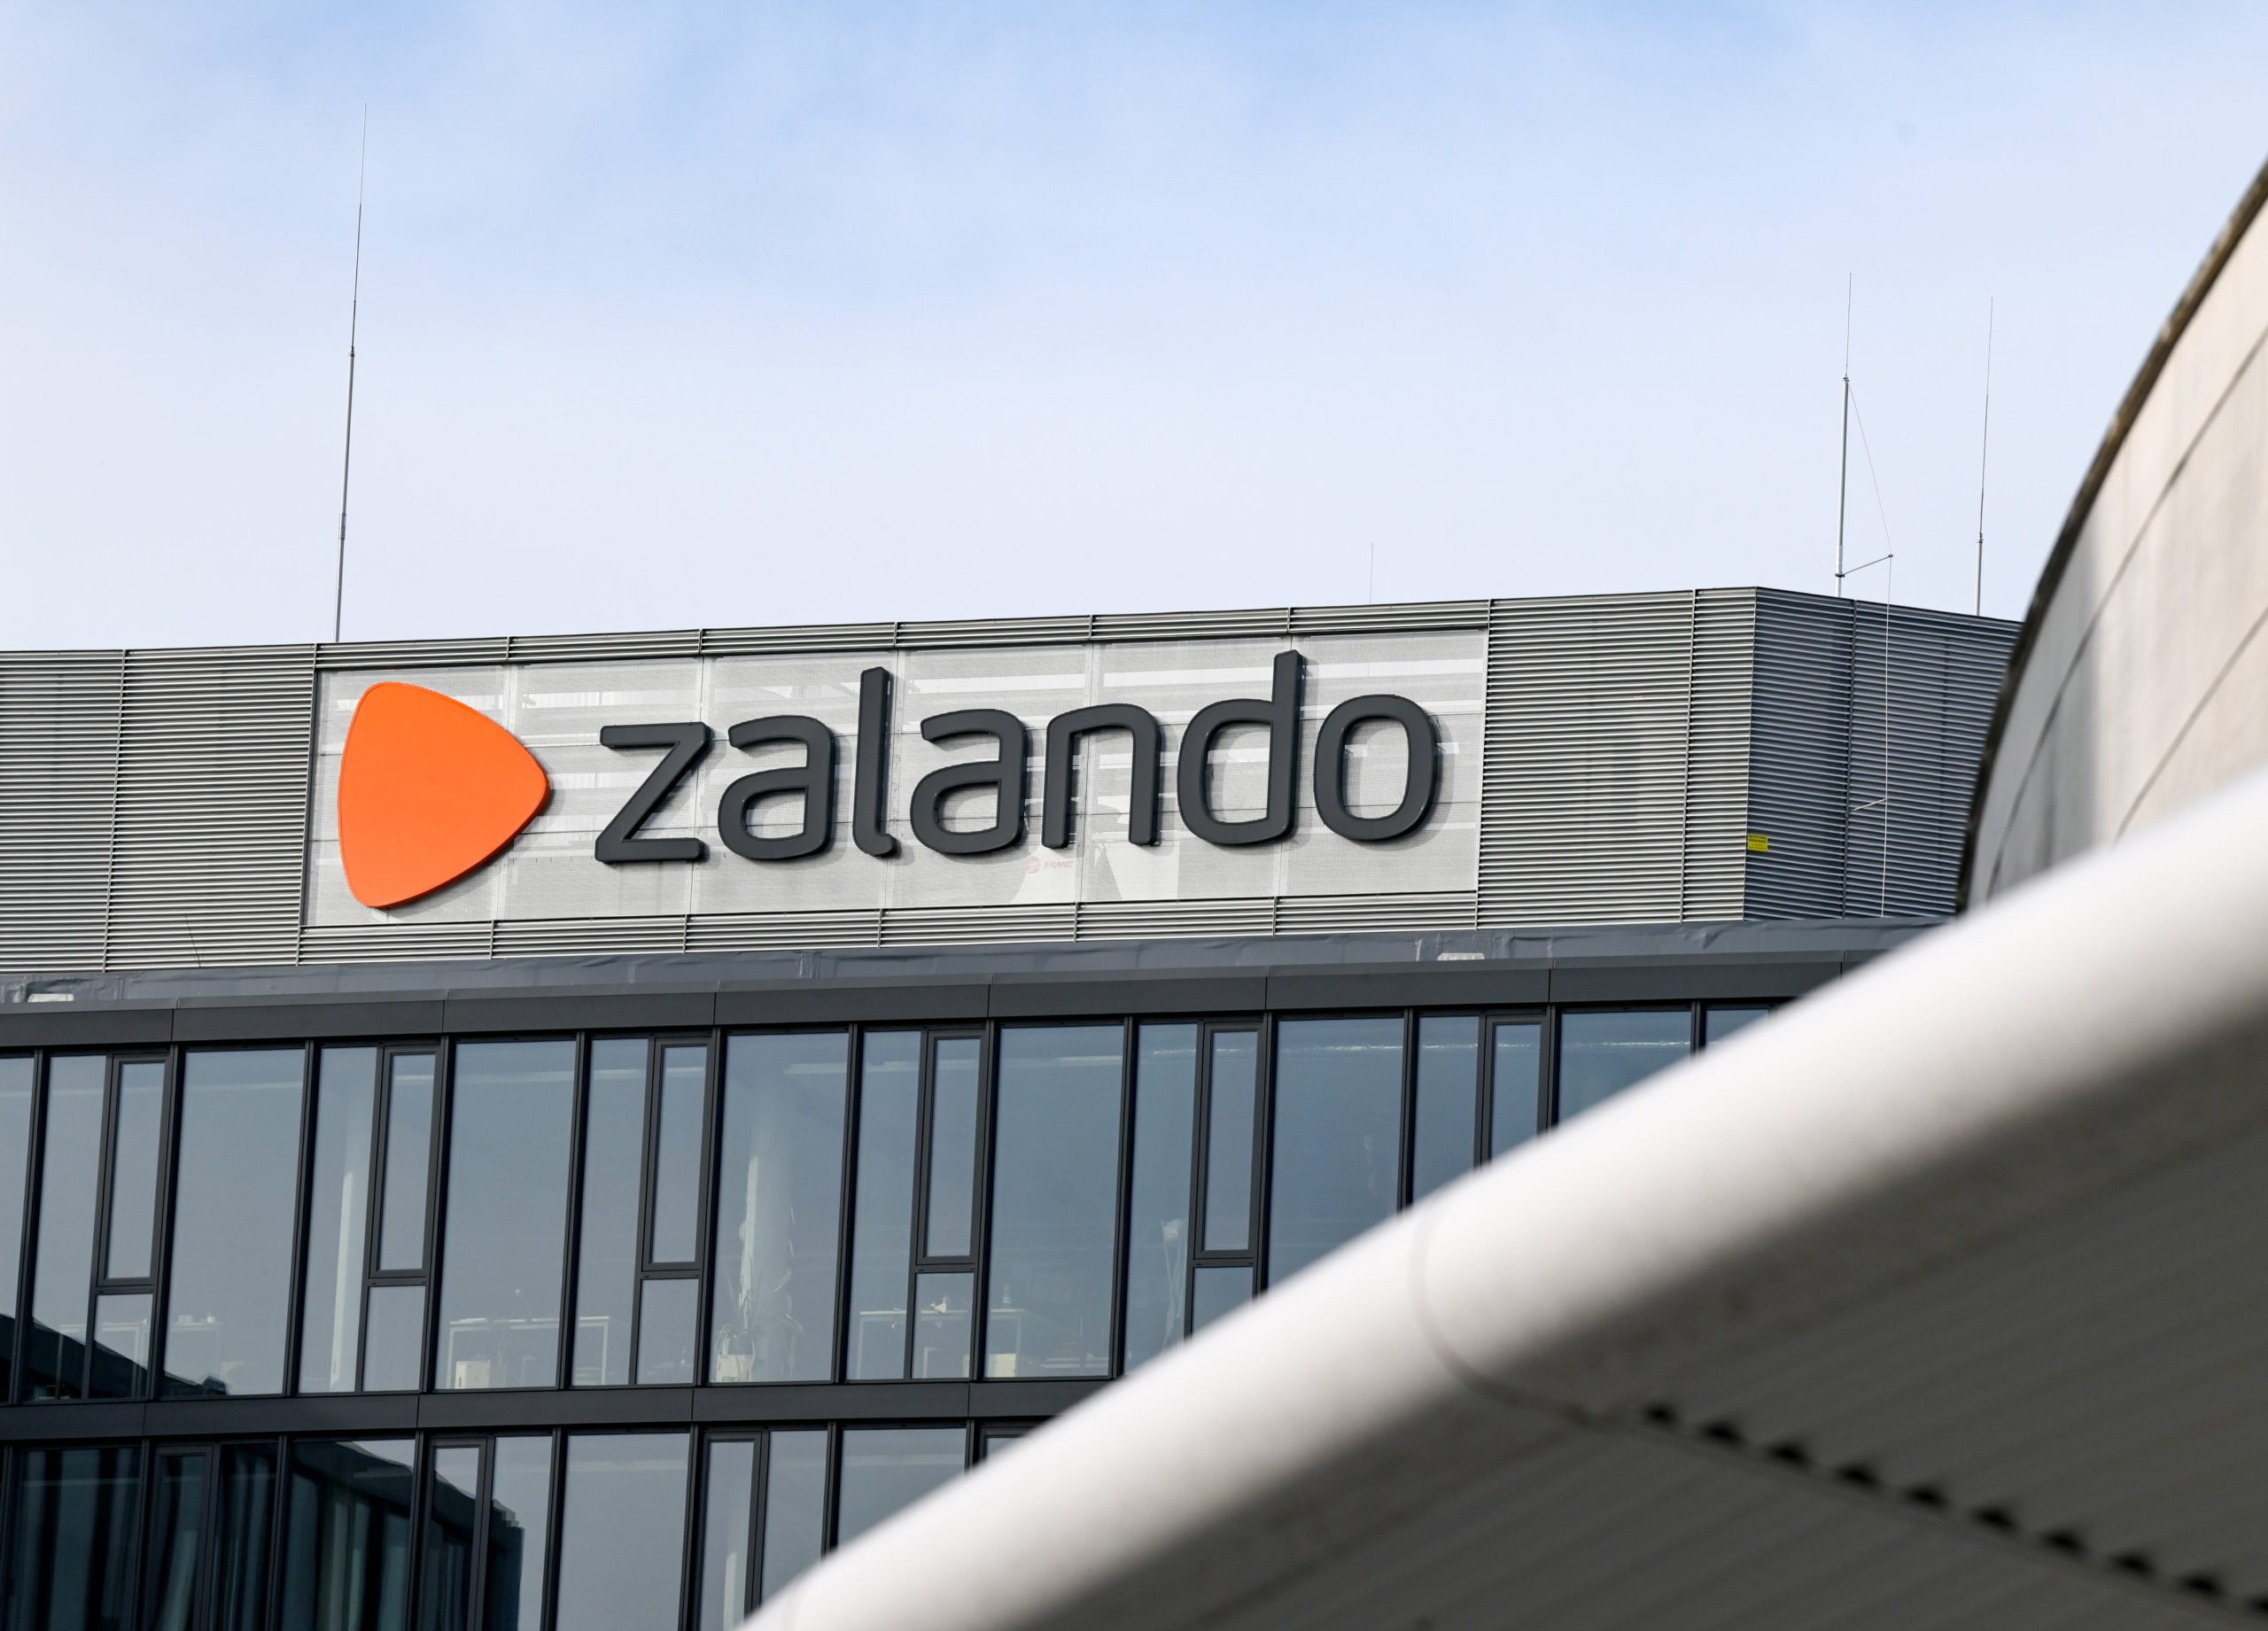 Zalando is growing at 47 percent